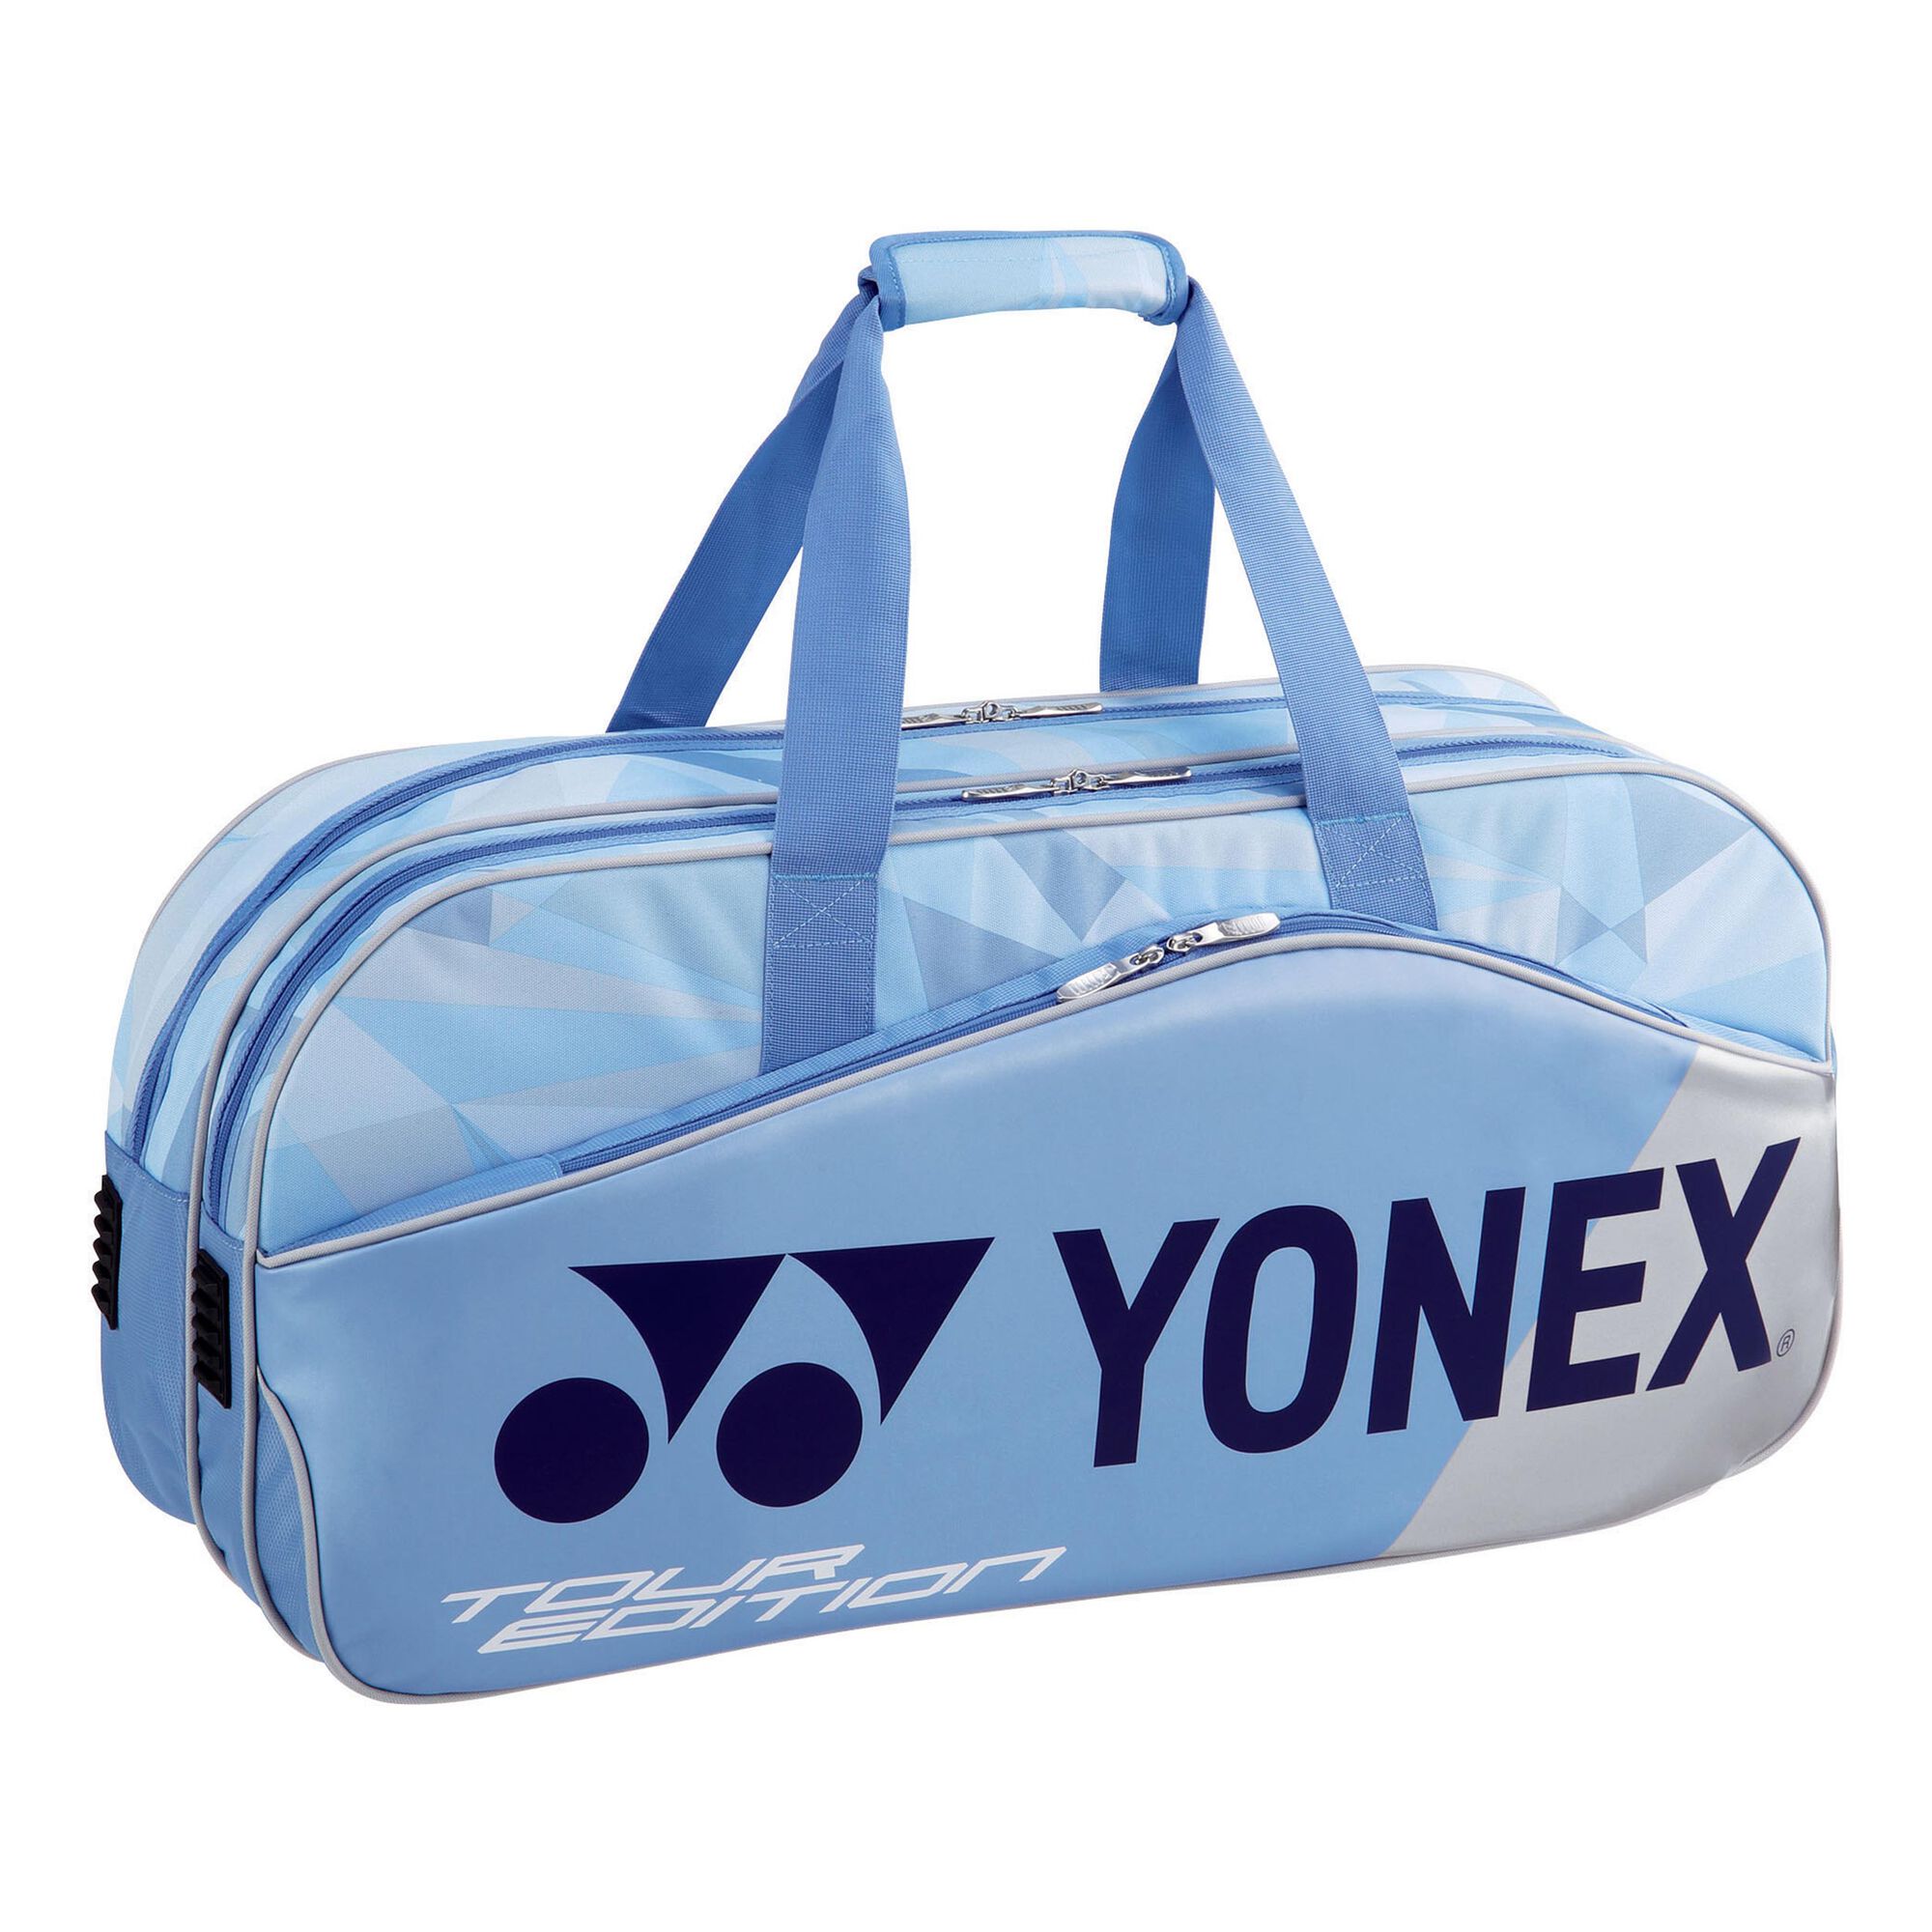 Сумка для бадминтона. Сумка Yonex для тенниса. Сумки енекс для бадминтона. Сумка для бадминтона Yonex. Спортивная сумка Yonex.